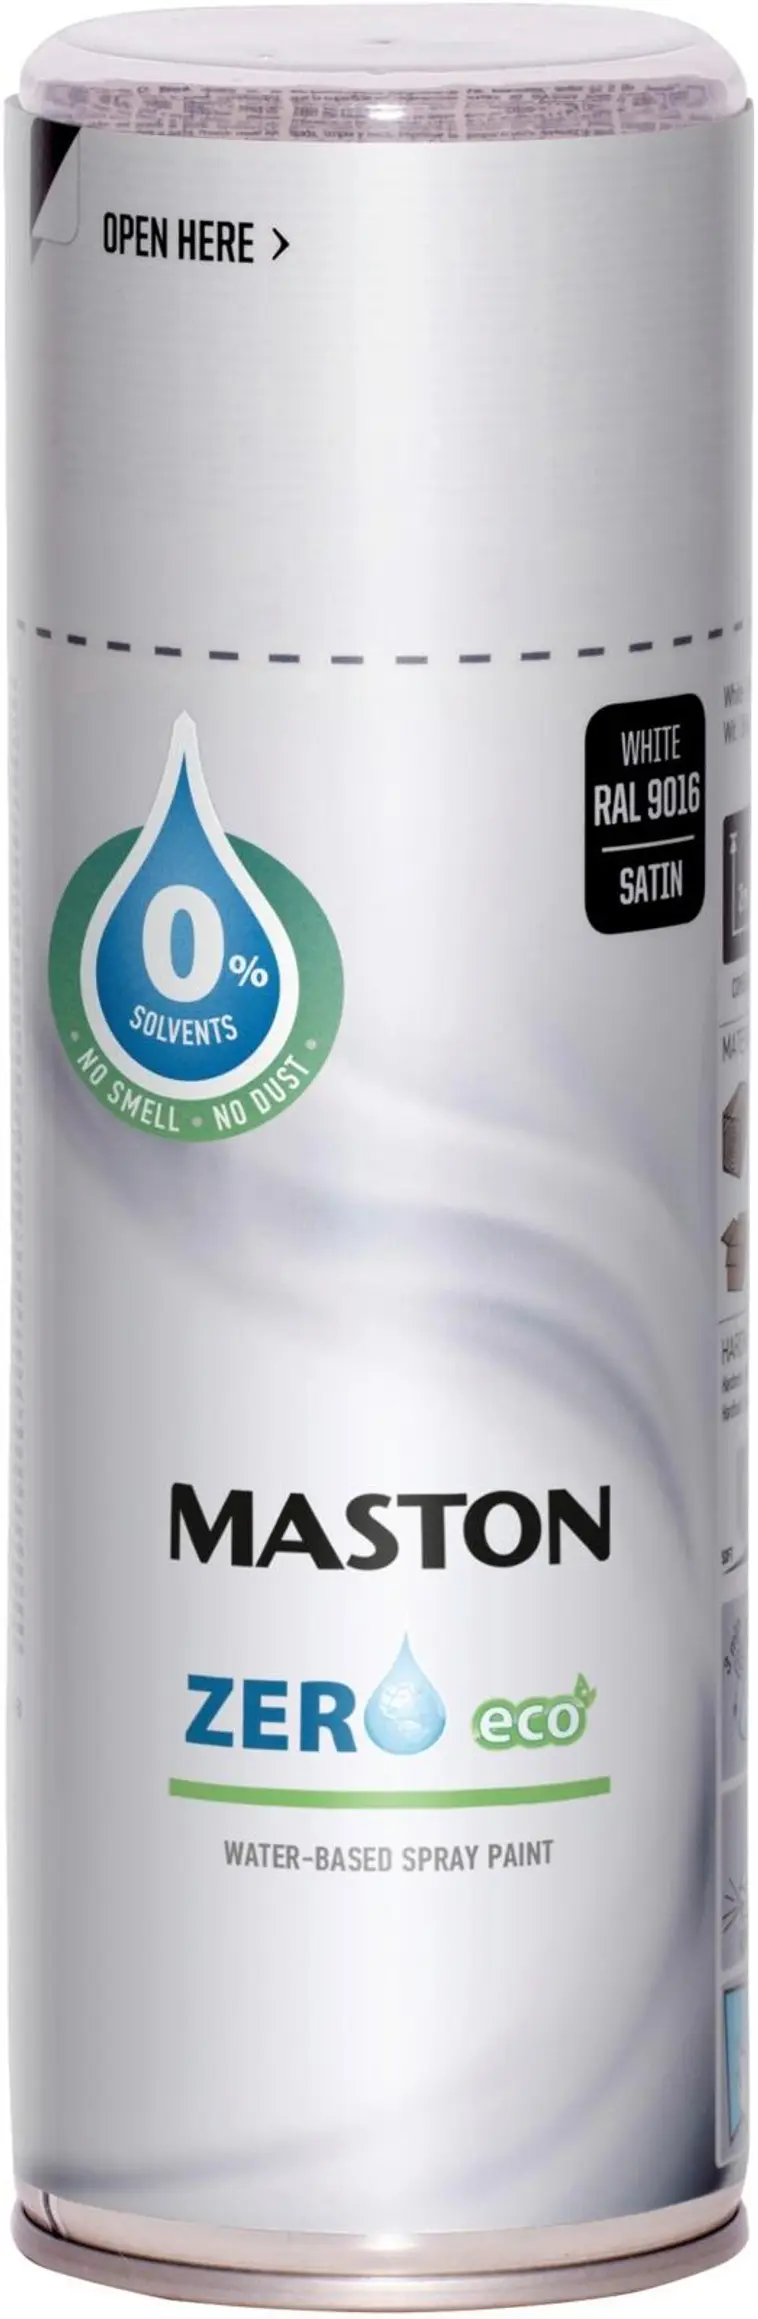 Maston spraymaali Zero valkoinen 400ml | Prisma verkkokauppa